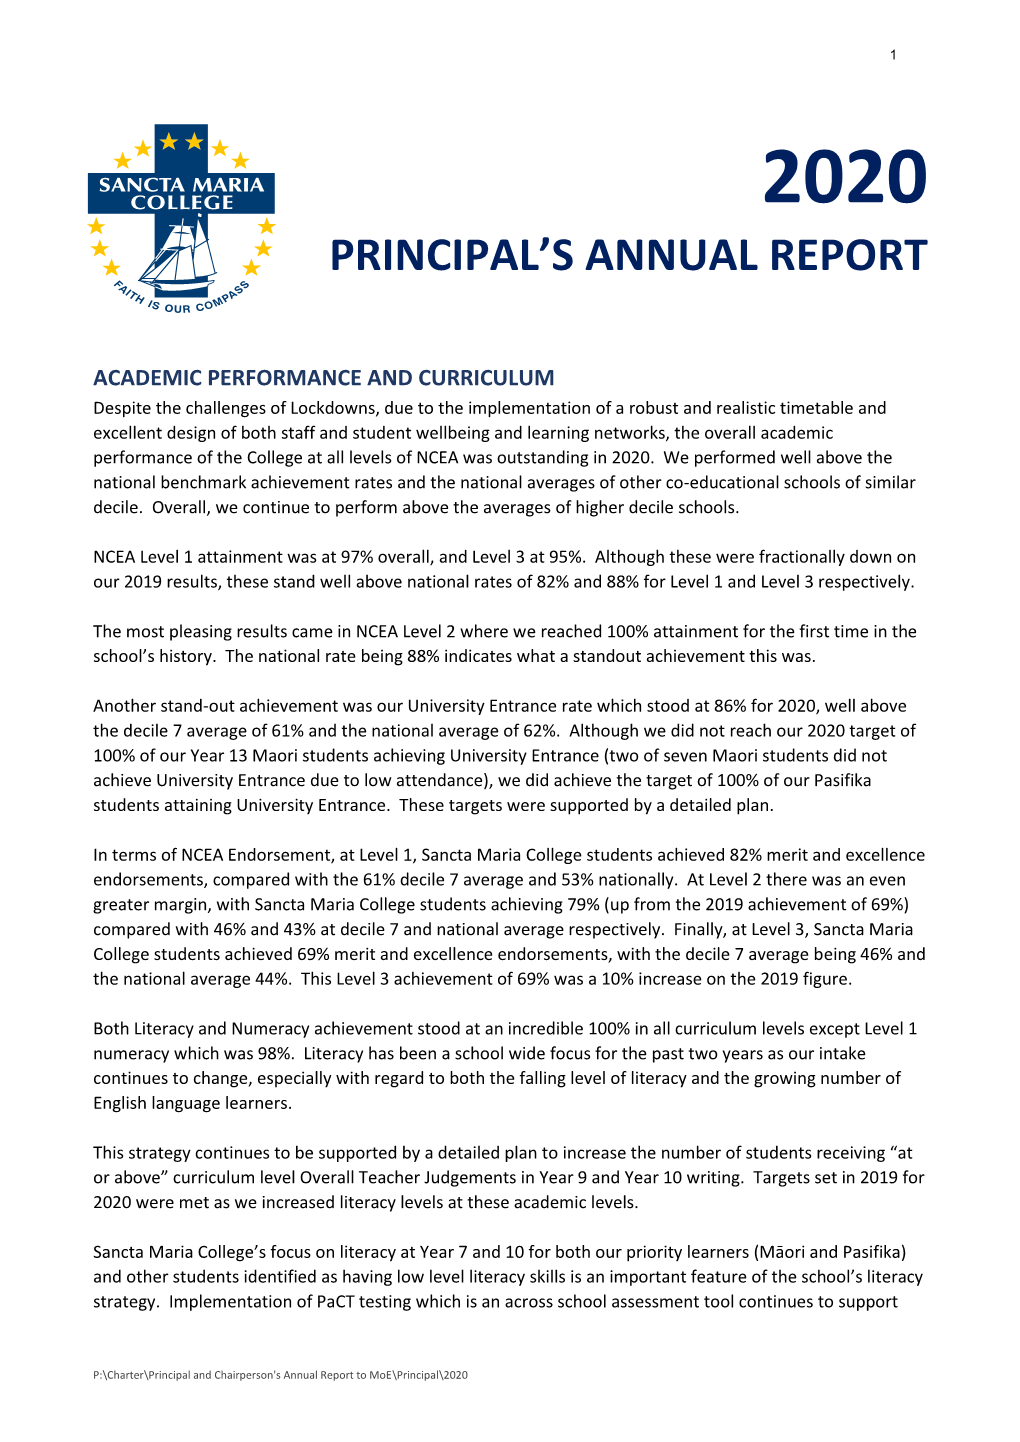 Principal's Annual Report